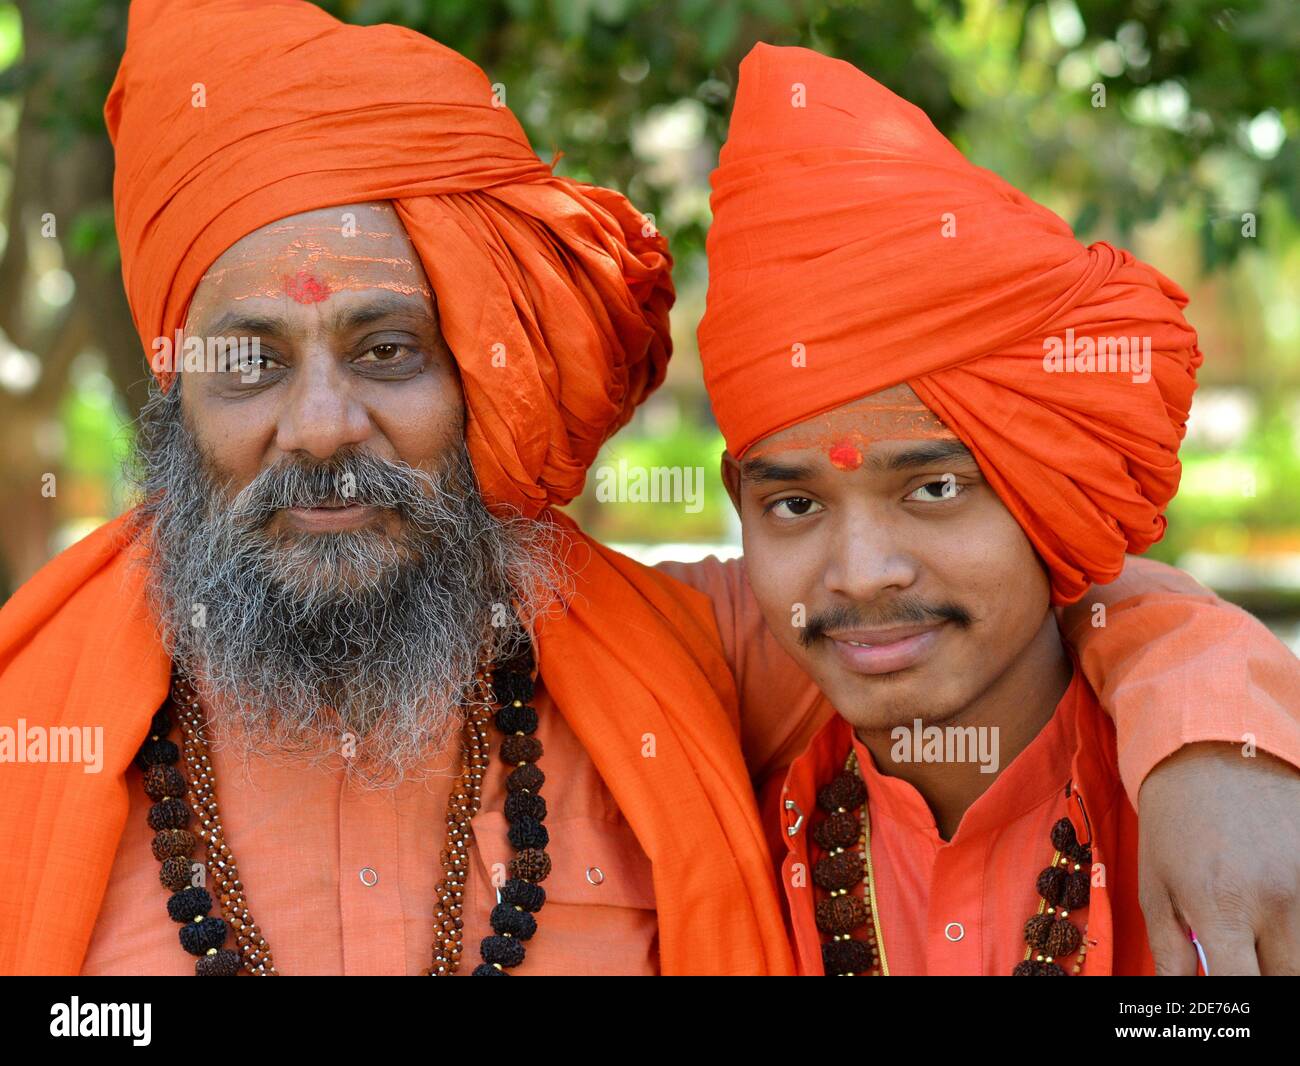 Zwei indische hinduistische heilige Männer (Shaivite Sadhus, Mönche, Anhänger), alt und jung, tragen orangefarbene Outfits und posieren zusammen während Maha Shivaratri. Stockfoto